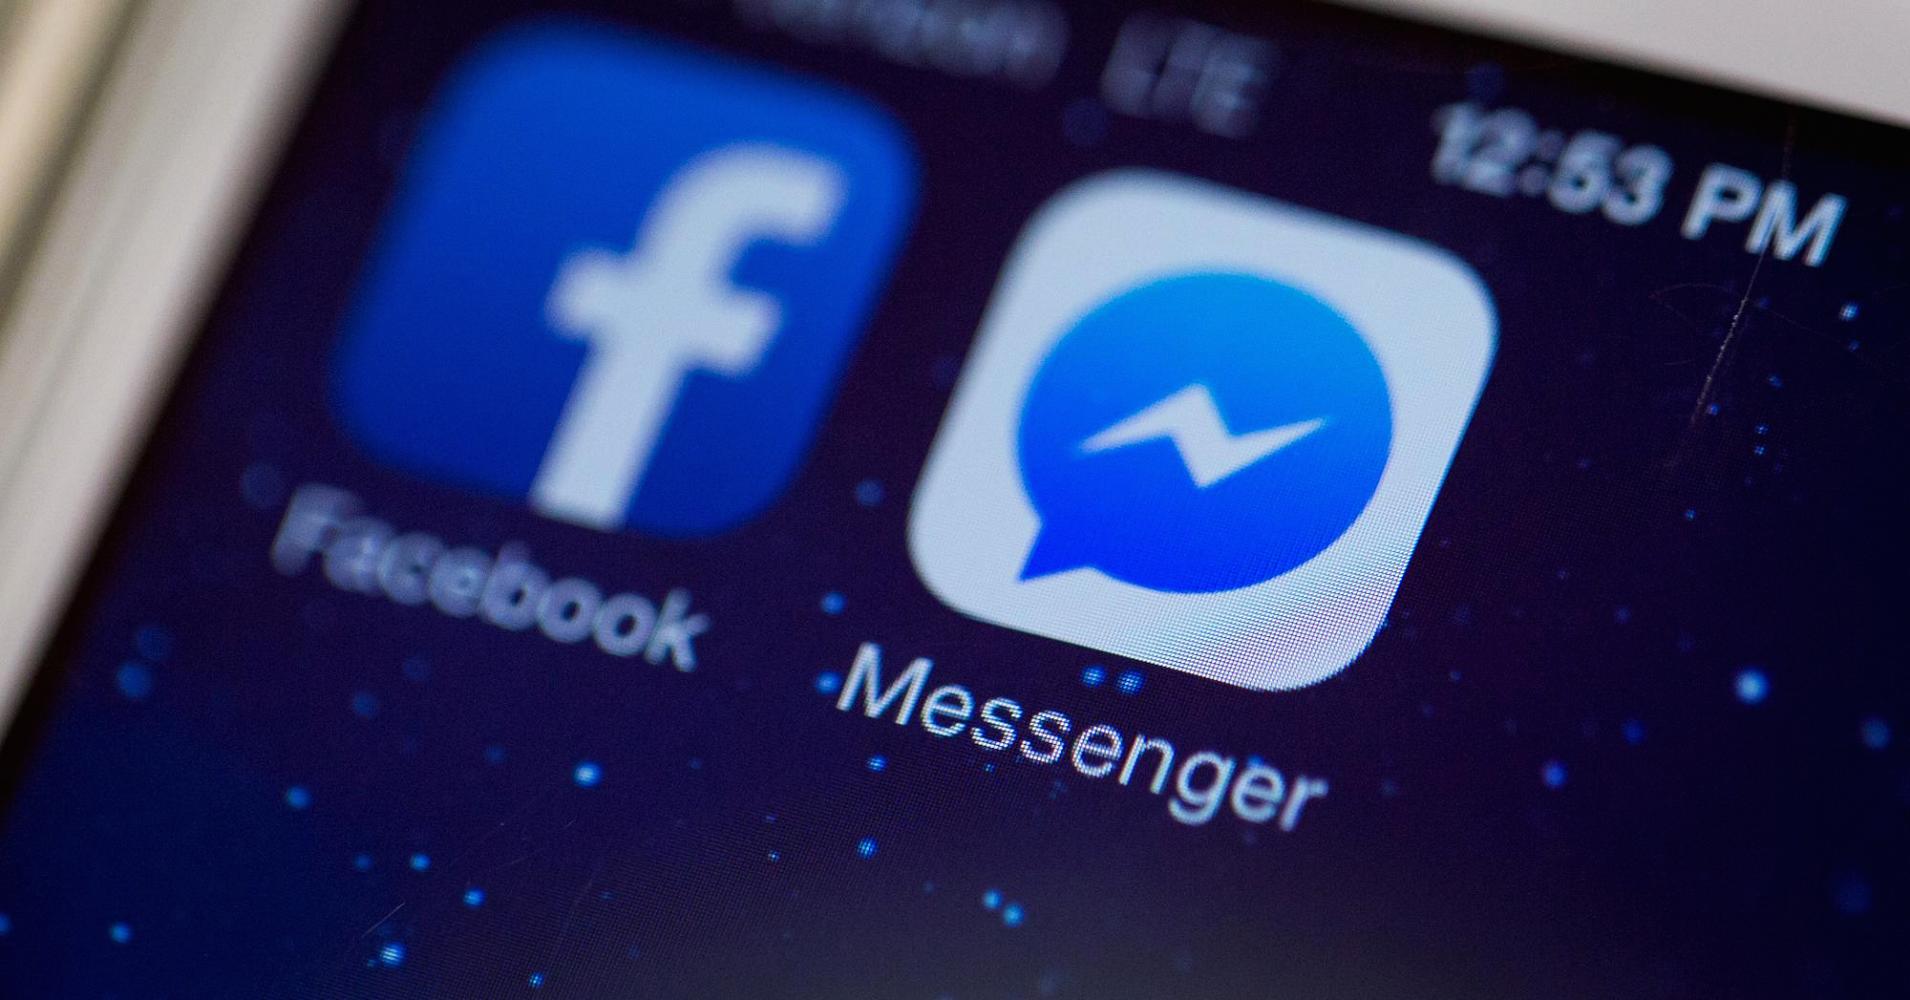 Messenger de Facebook permite compartir videos al instante